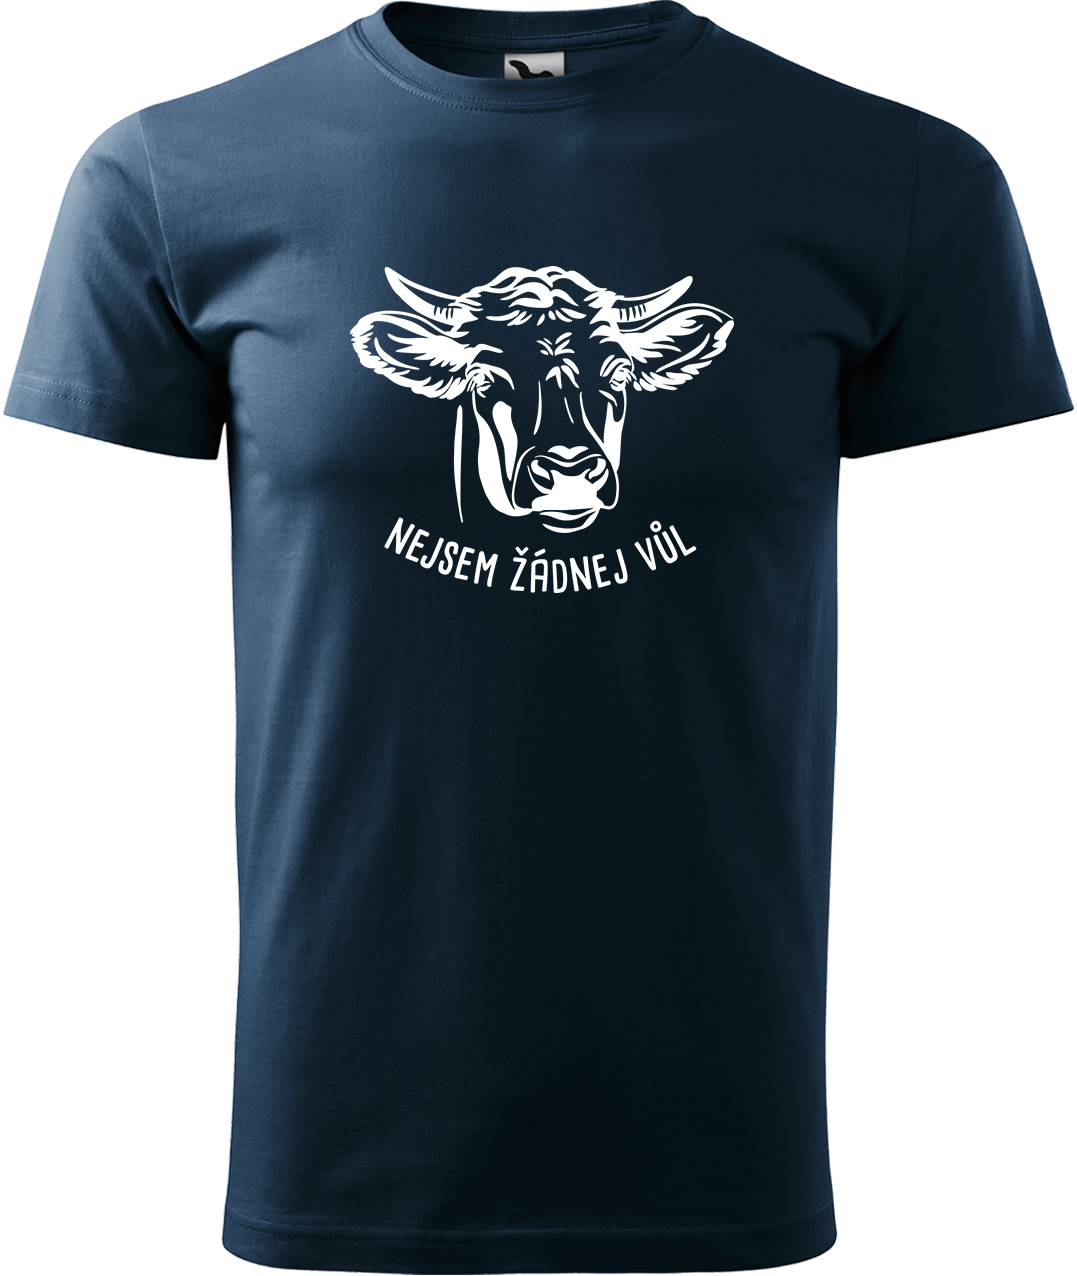 Pánské tričko s krávou - Nejsem žádnej vůl Velikost: L, Barva: Námořní modrá (02), Střih: pánský